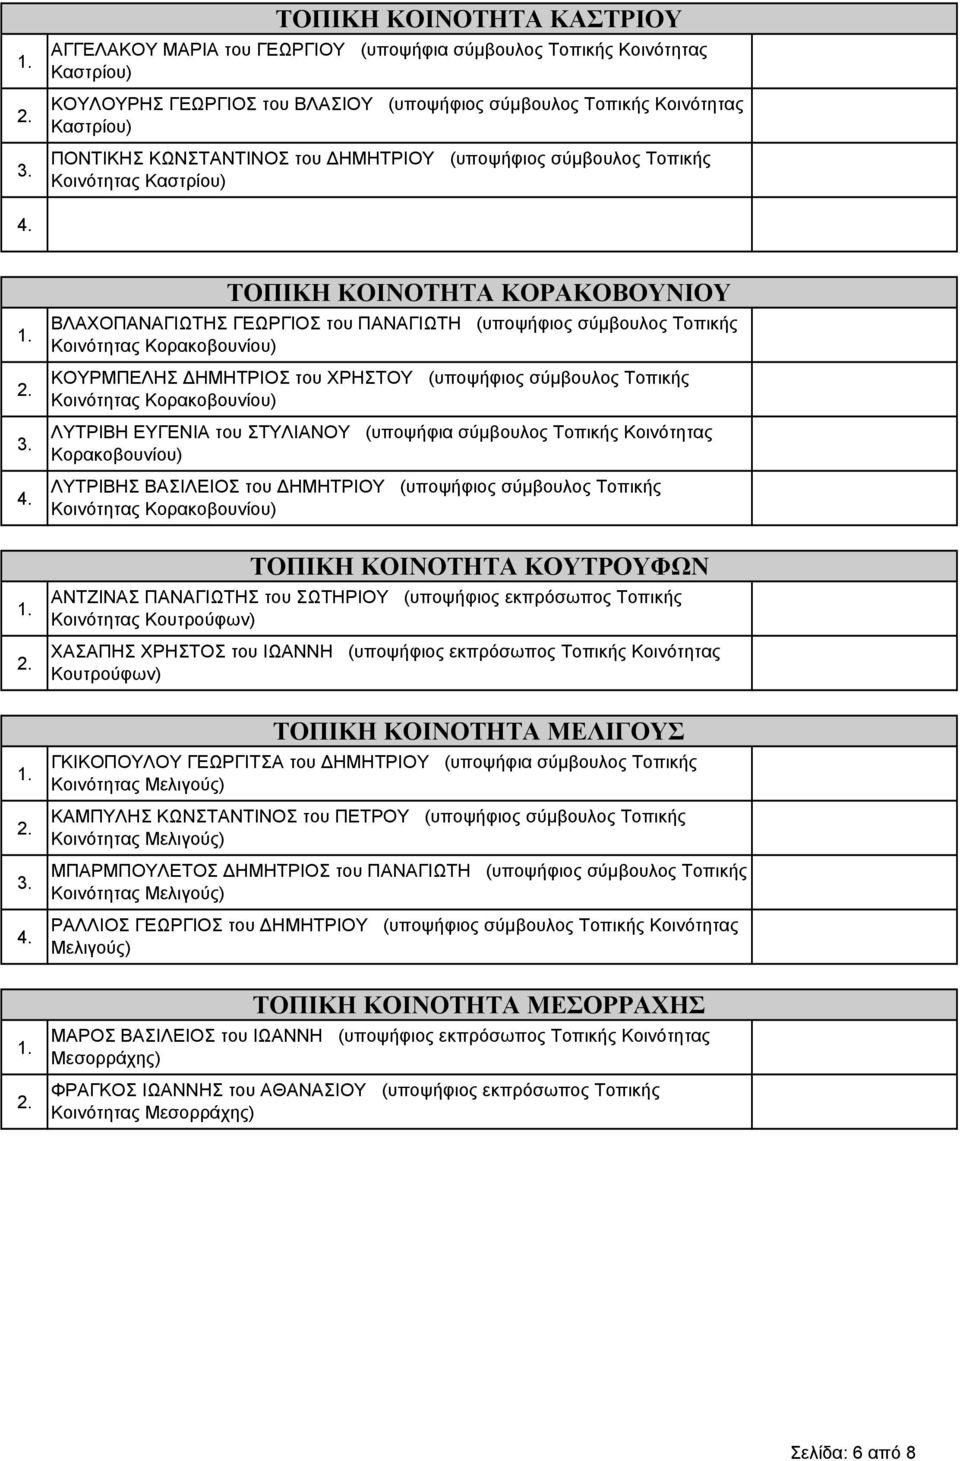 Κορακοβουνίου) ΚΟΥΡΜΠΕΛΗΣ ΔΗΜΗΤΡΙΟΣ του ΧΡΗΣΤΟΥ (υποψήφιος σύμβουλος Τοπικής Κοινότητας Κορακοβουνίου) ΛΥΤΡΙΒΗ ΕΥΓΕΝΙΑ του ΣΤΥΛΙΑΝΟΥ (υποψήφια σύμβουλος Τοπικής Κοινότητας Κορακοβουνίου) ΛΥΤΡΙΒΗΣ